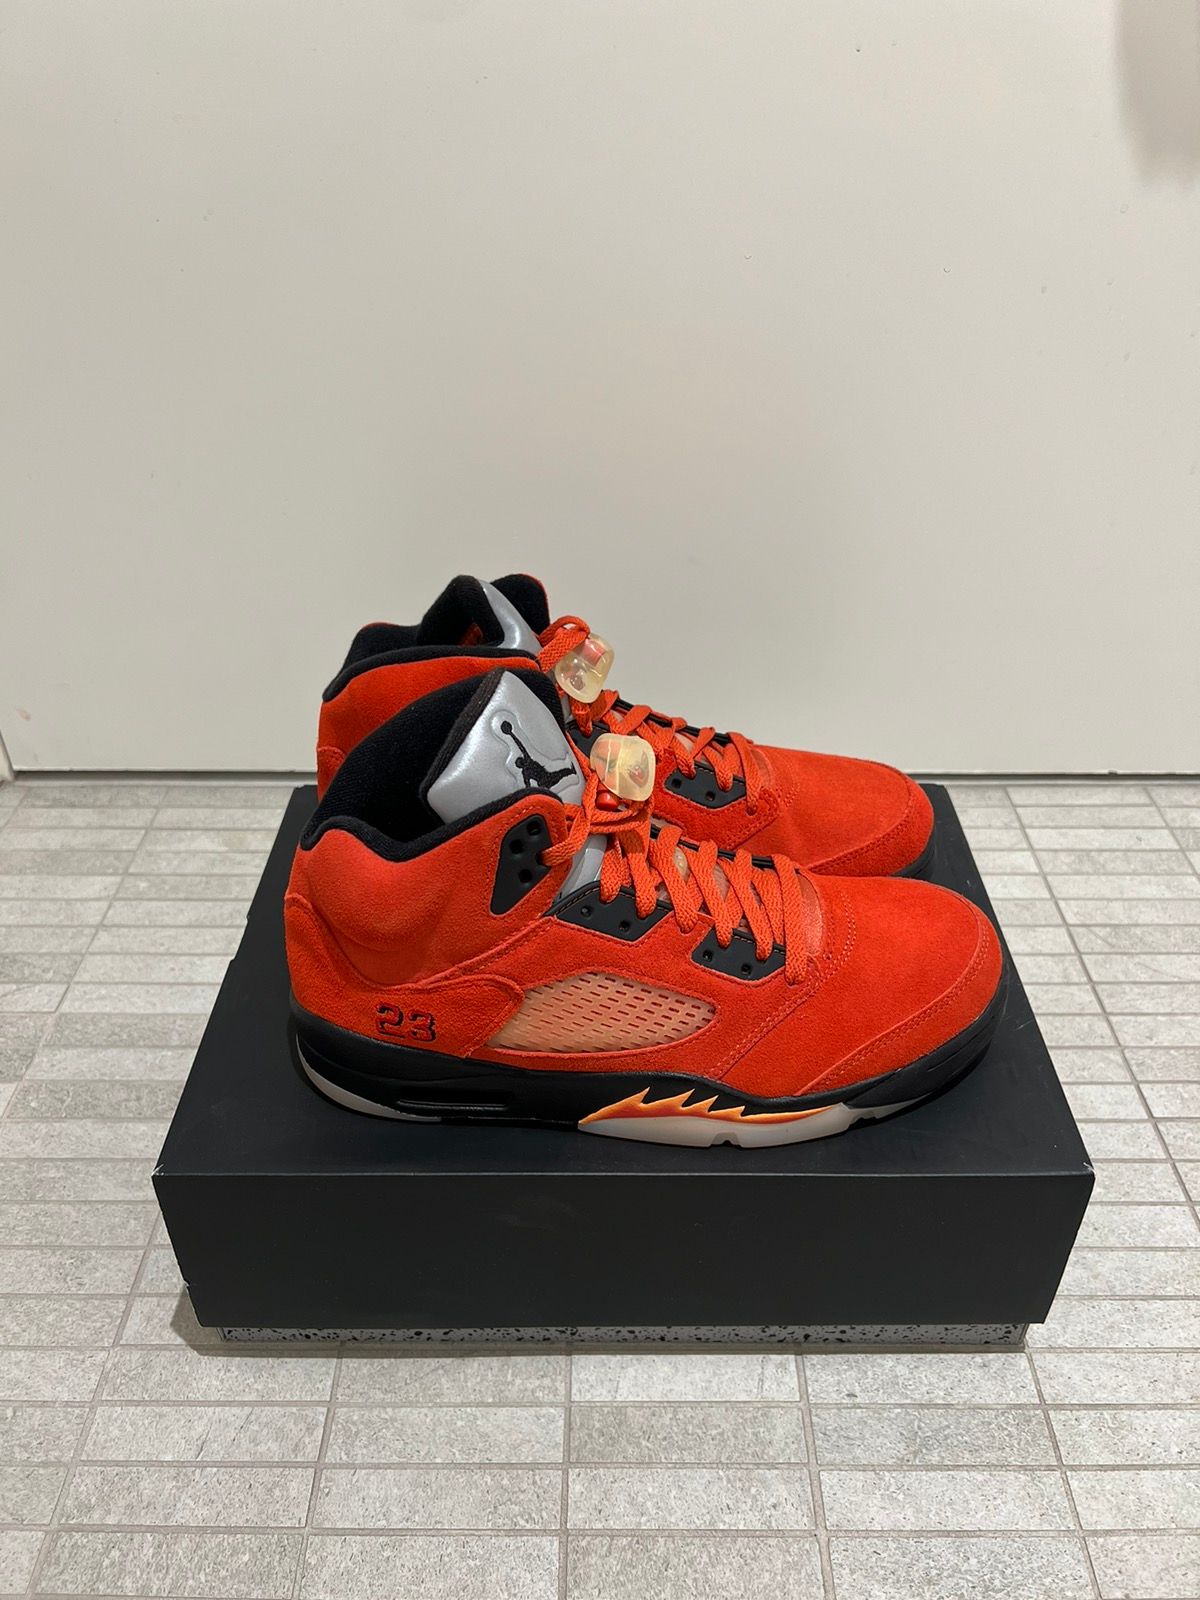 Pre-owned Jordan Nike Jordan 5 “raging Bull Red” 2021 Shoes